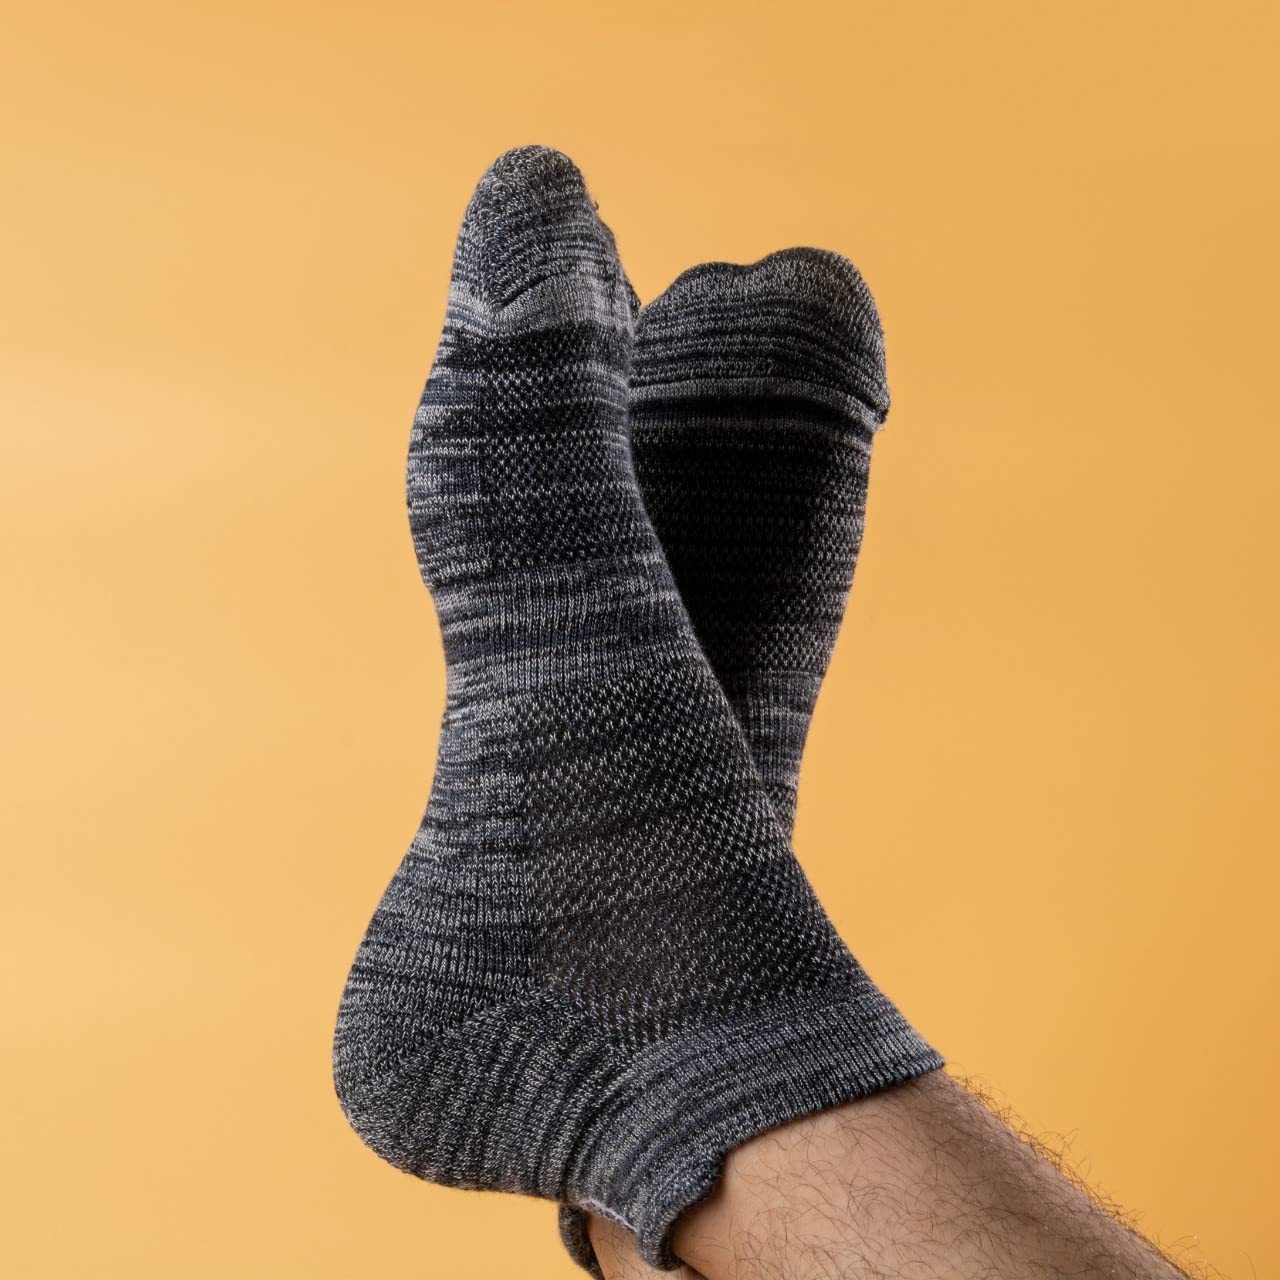 Mush Bamboo Ultra Soft, Anti Odor, Breathable, Anti Blister Ankle Socks for Men & Women for Casual & Sports Wear (Pack of 3, Melange) (Black)